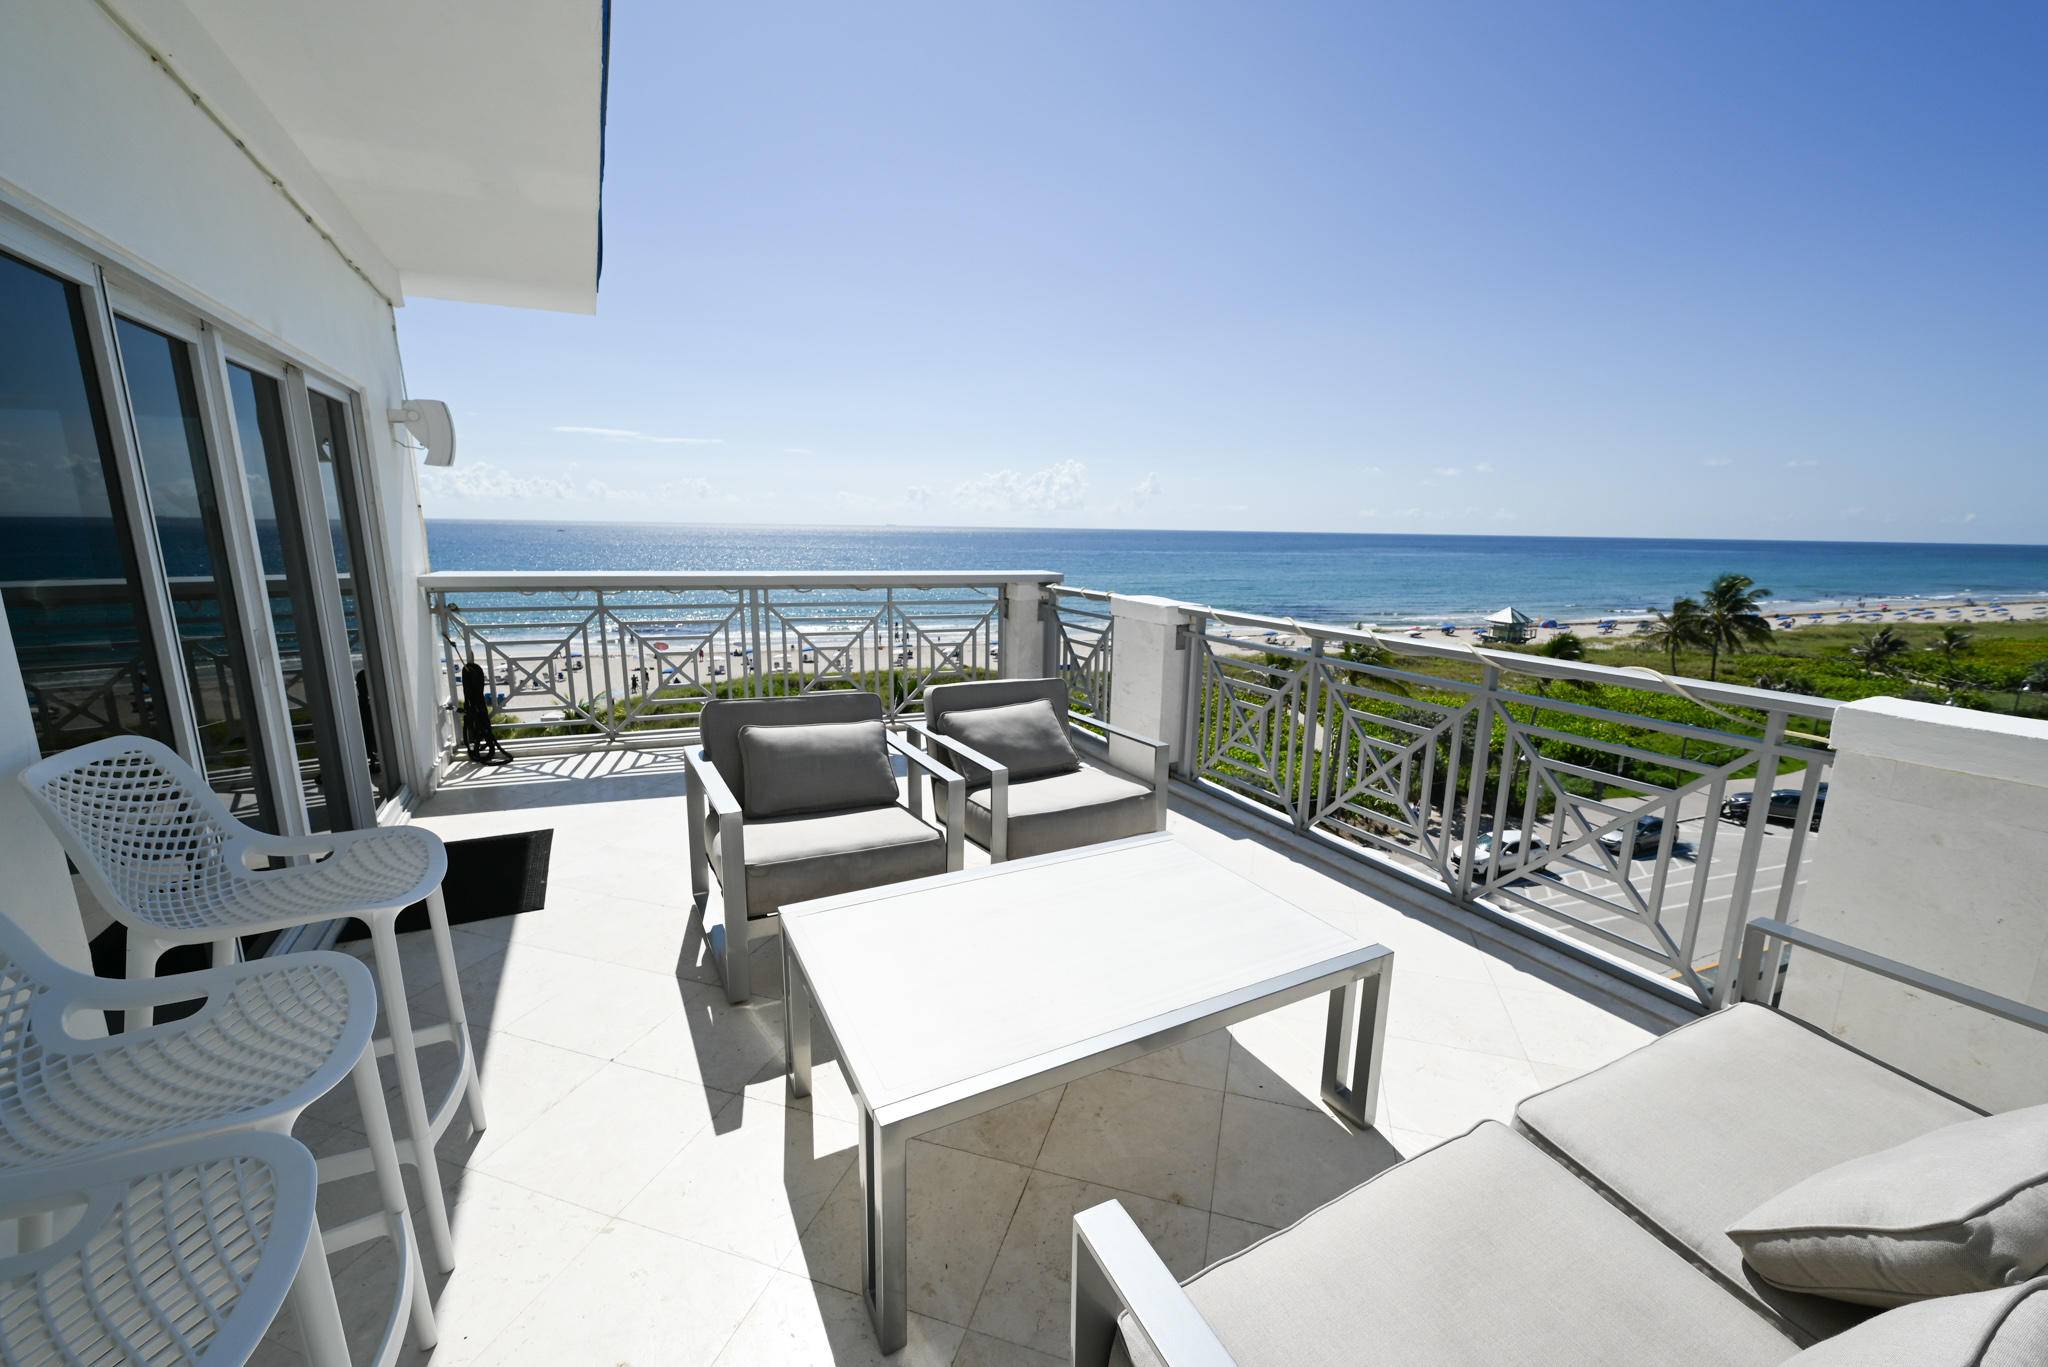 Magnificent 3 Bedroom 2 Bathroom Penthouse Condo Overlooking the Ocean in Delray Beach.